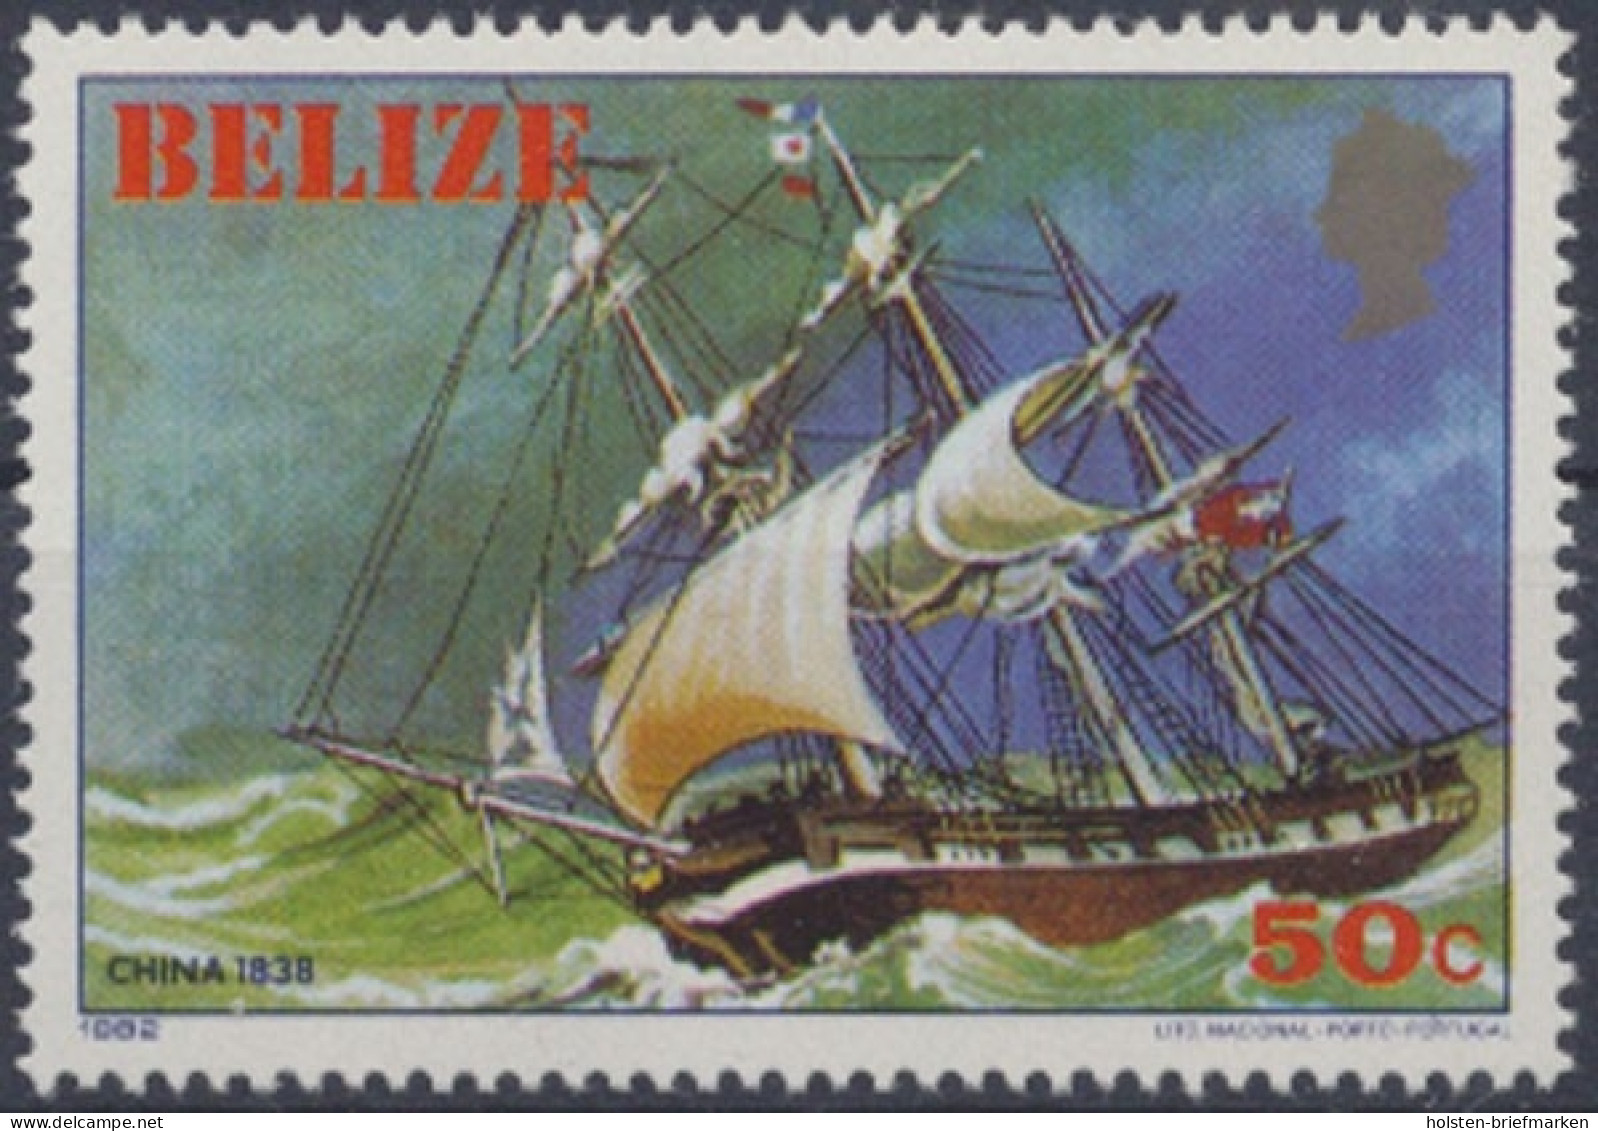 Belize, MiNr. 628, Postfrisch - Belice (1973-...)